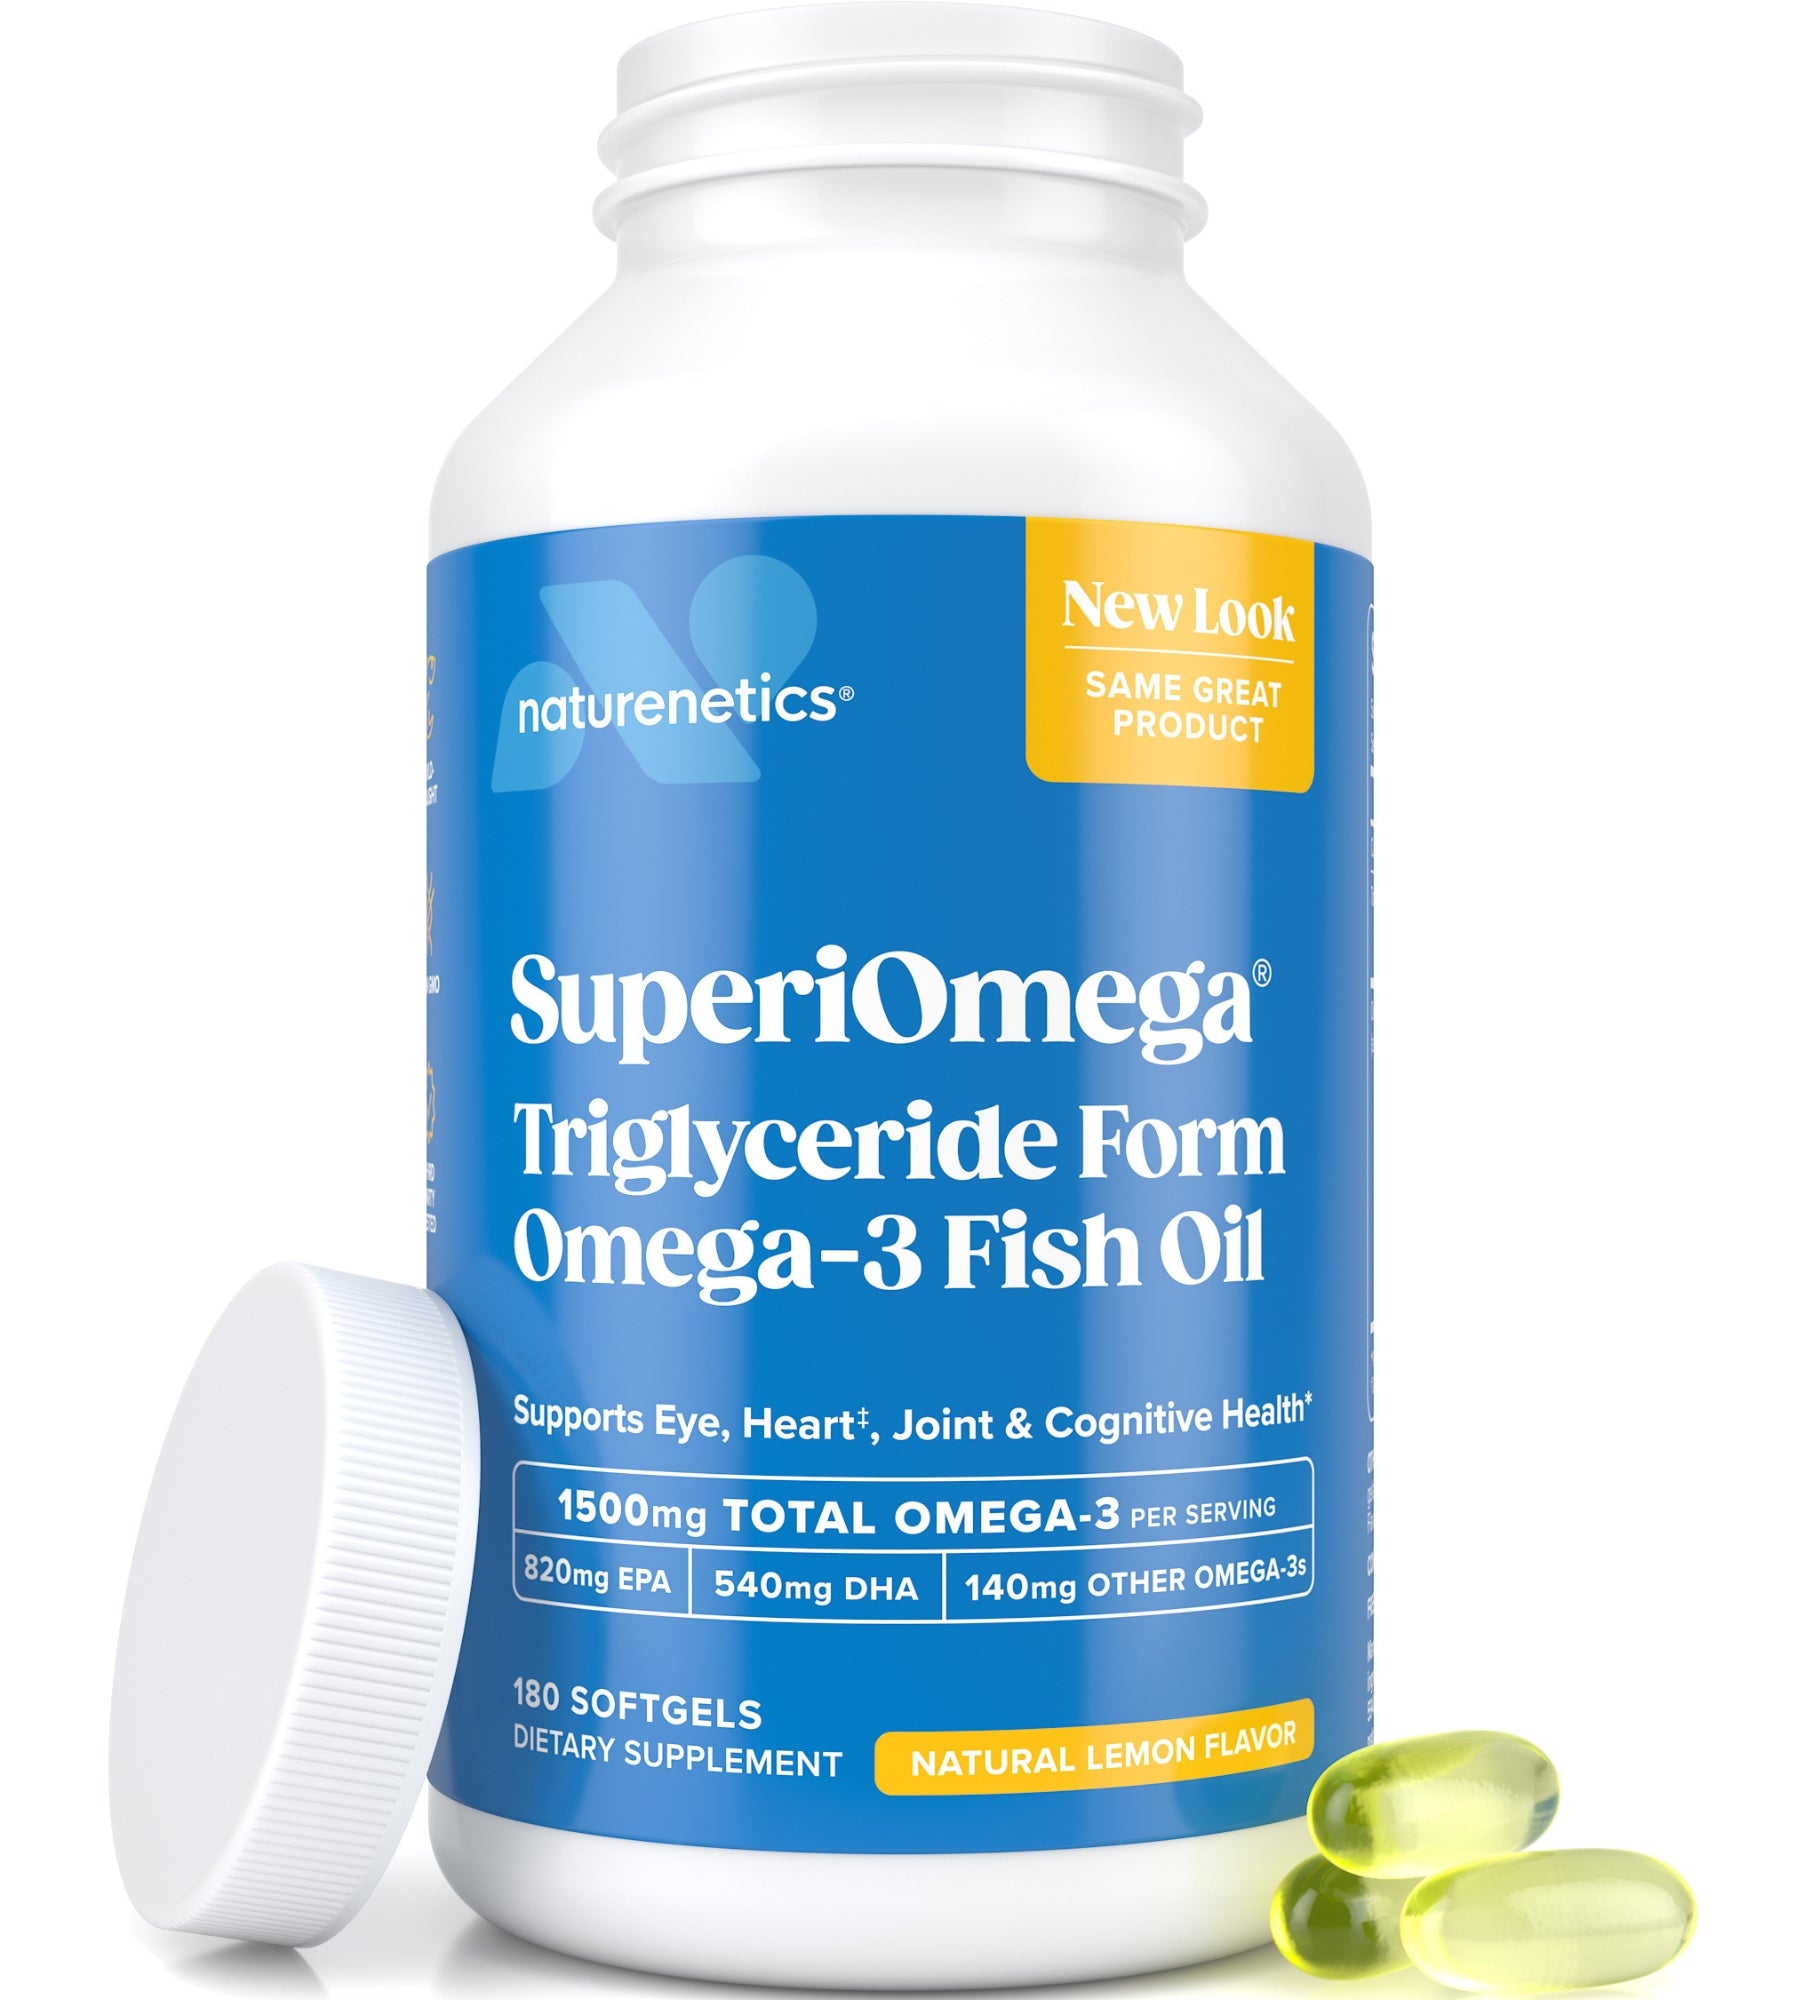 SuperiOmega - Omega-3 Fish Oil